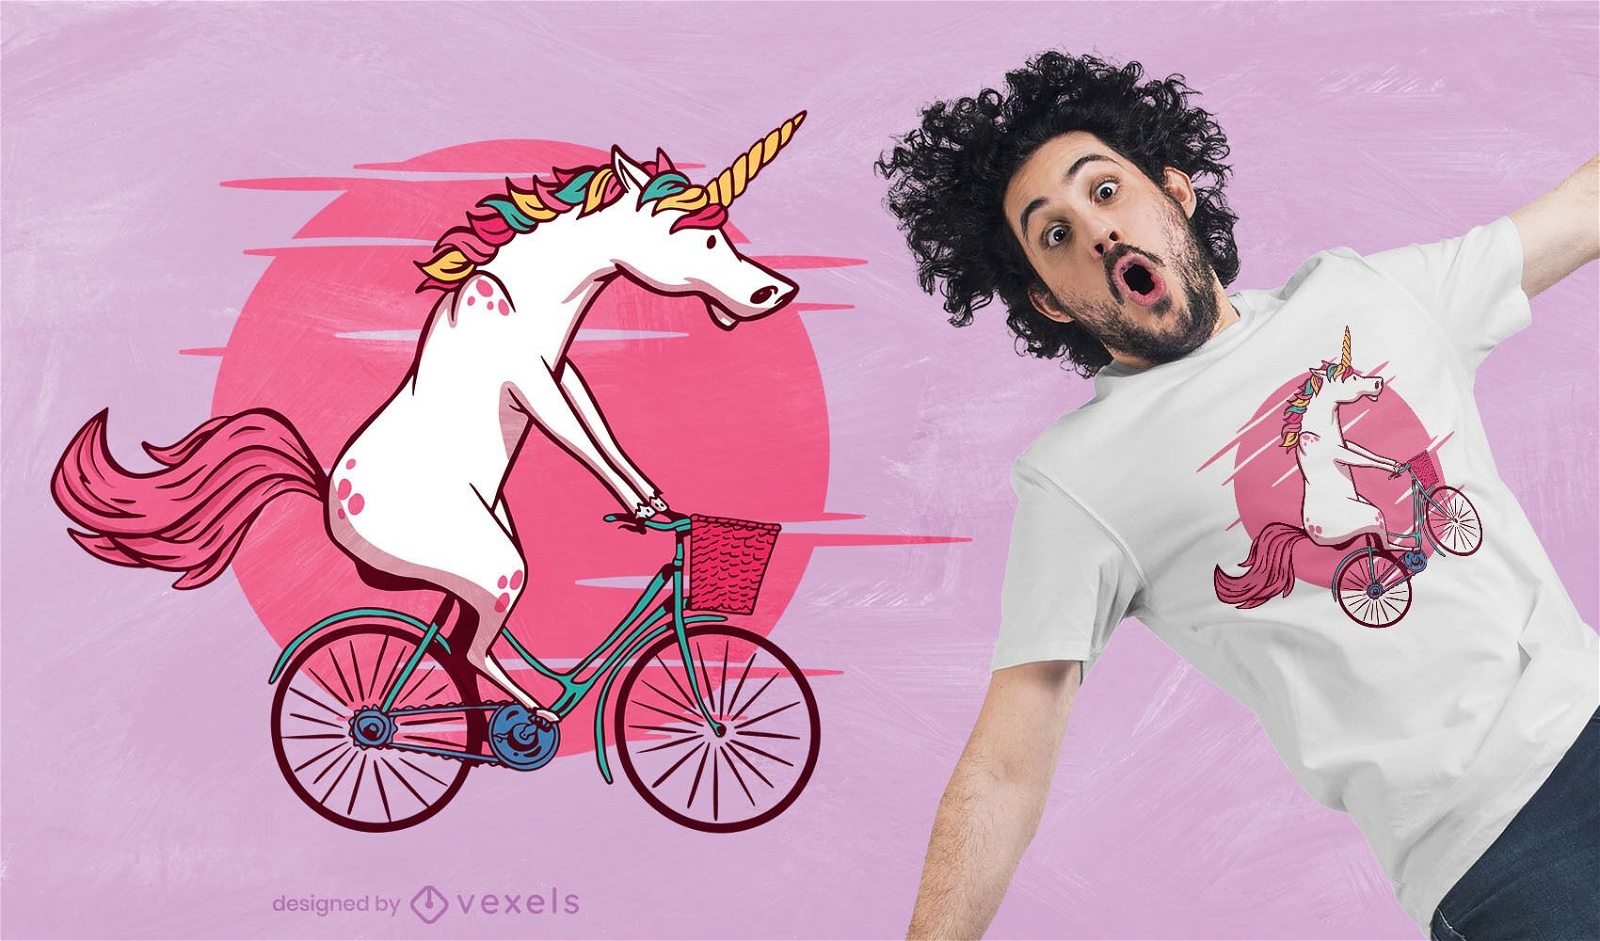 Dise?o de camiseta bicicleta unicornio.